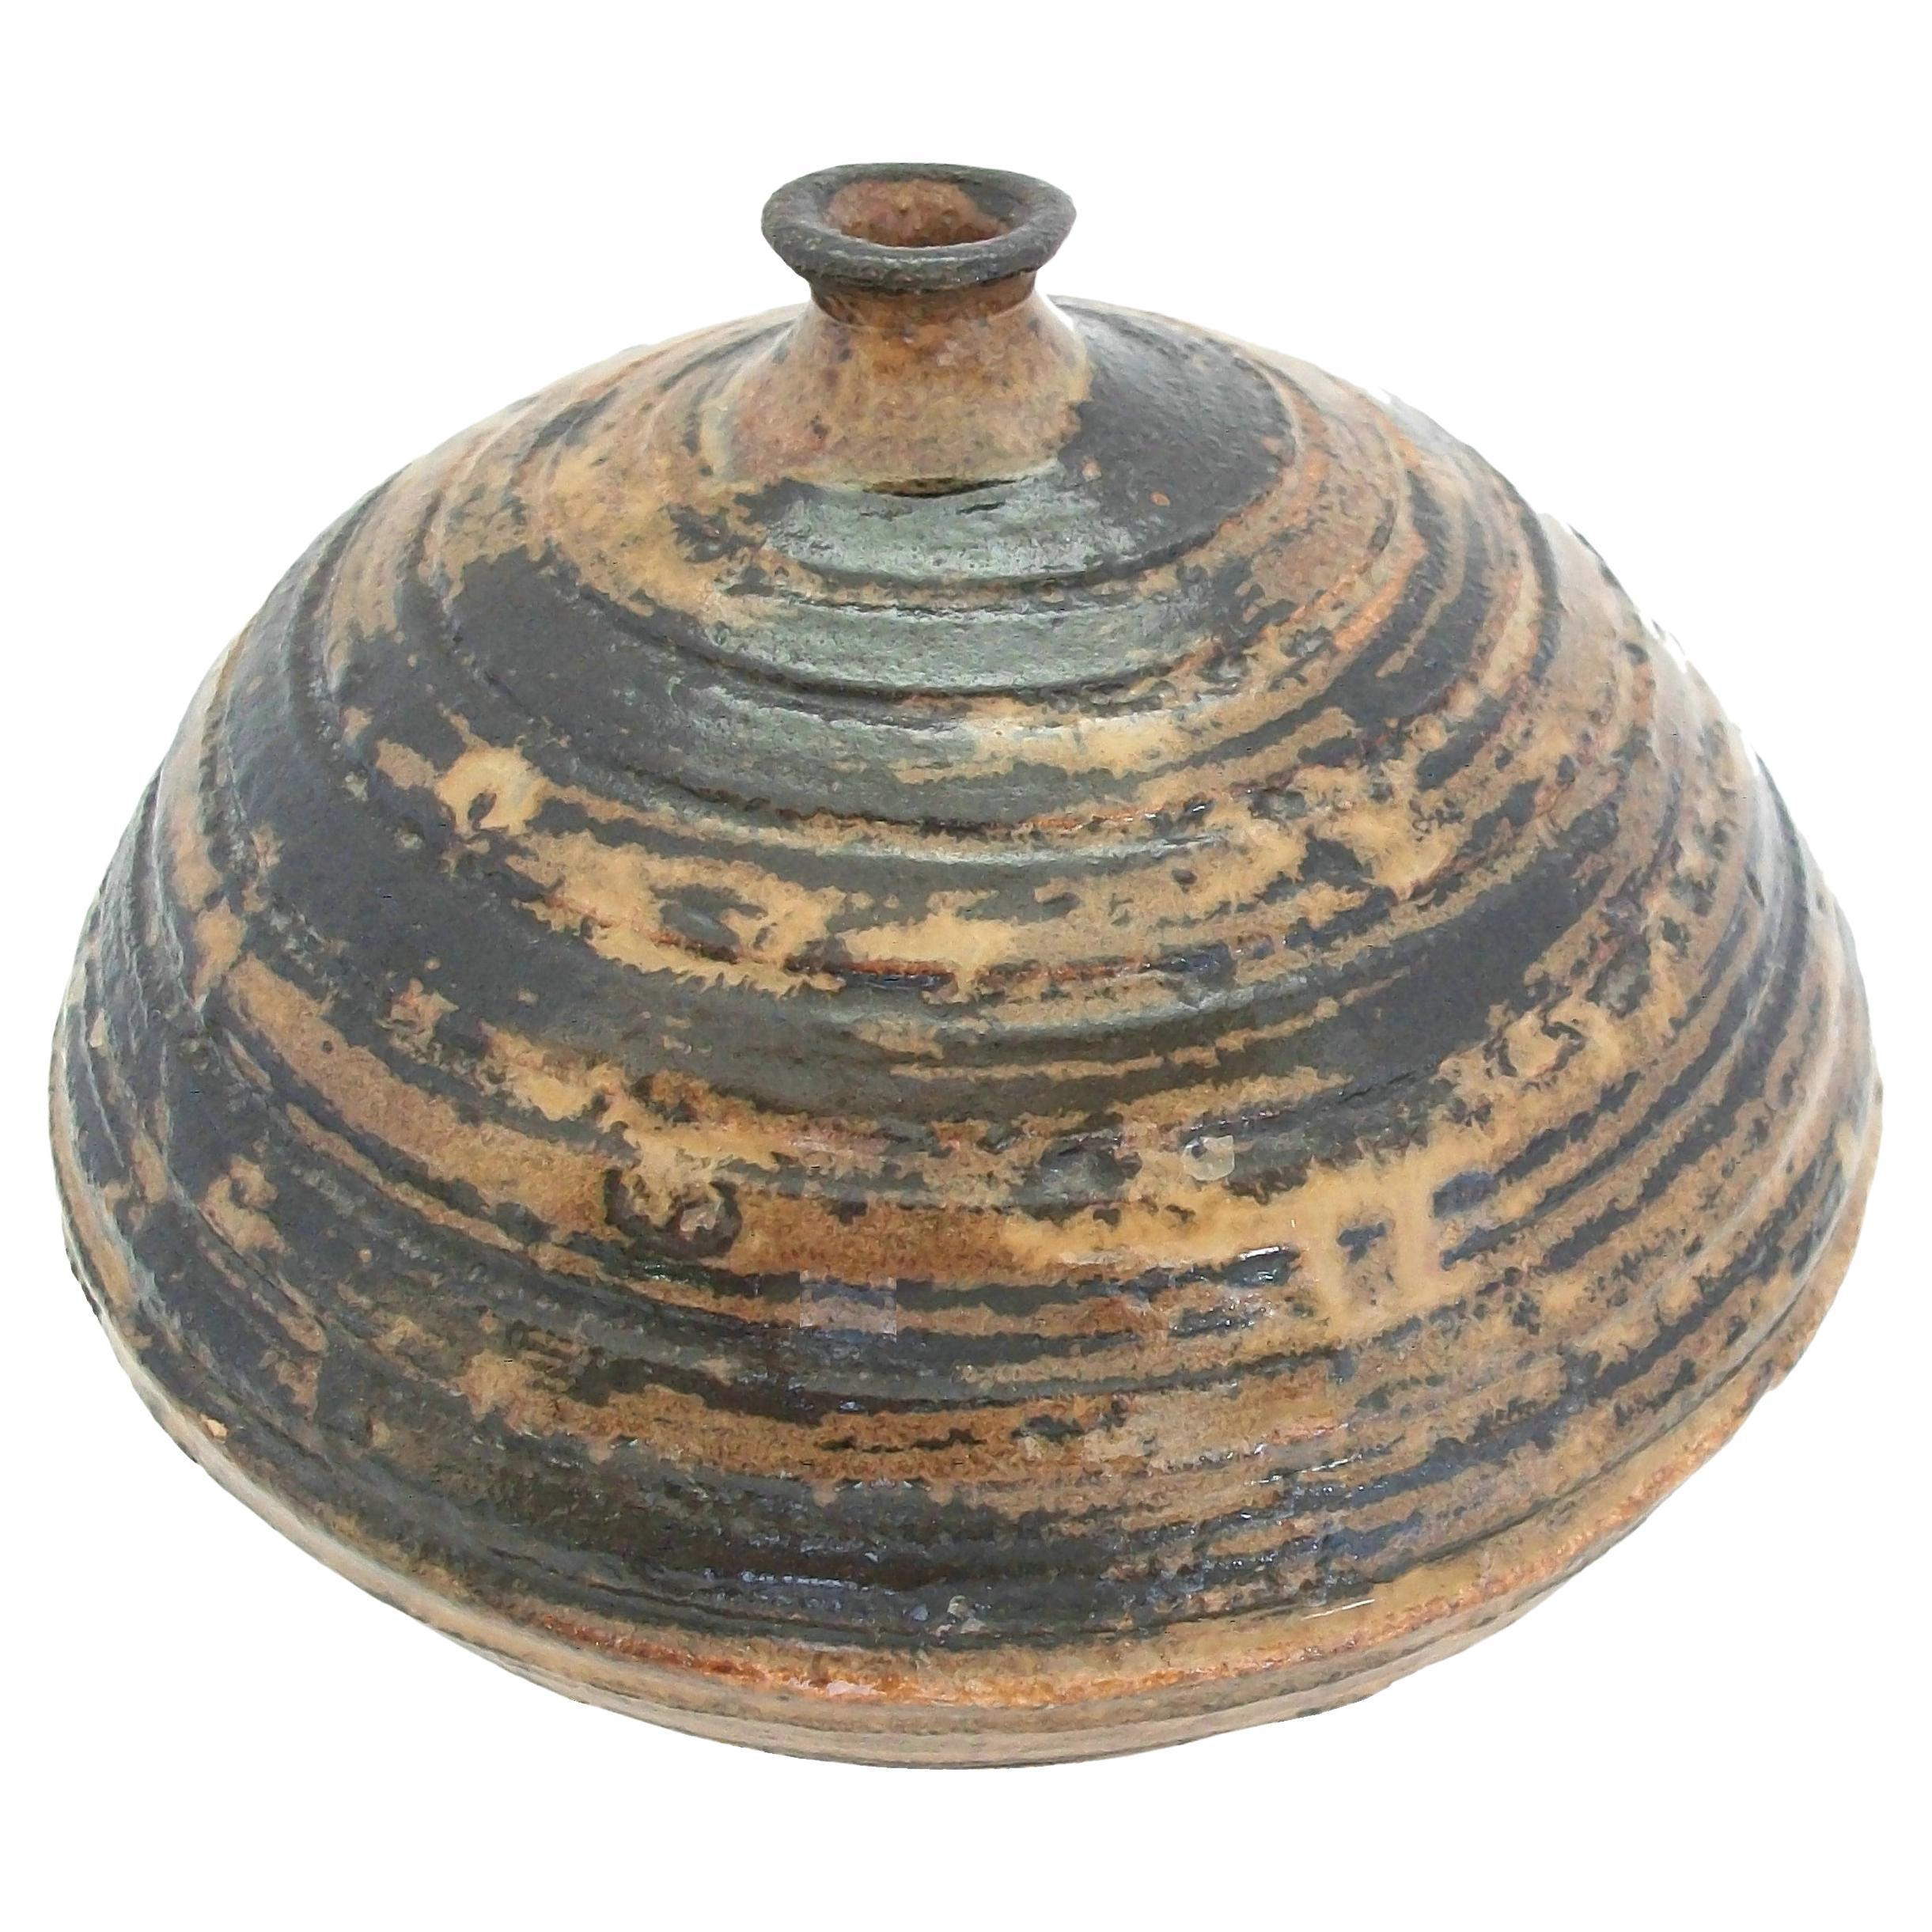 Vase en poterie d'atelier émaillée du milieu du siècle dernier - Non signé - Canada - vers 1970